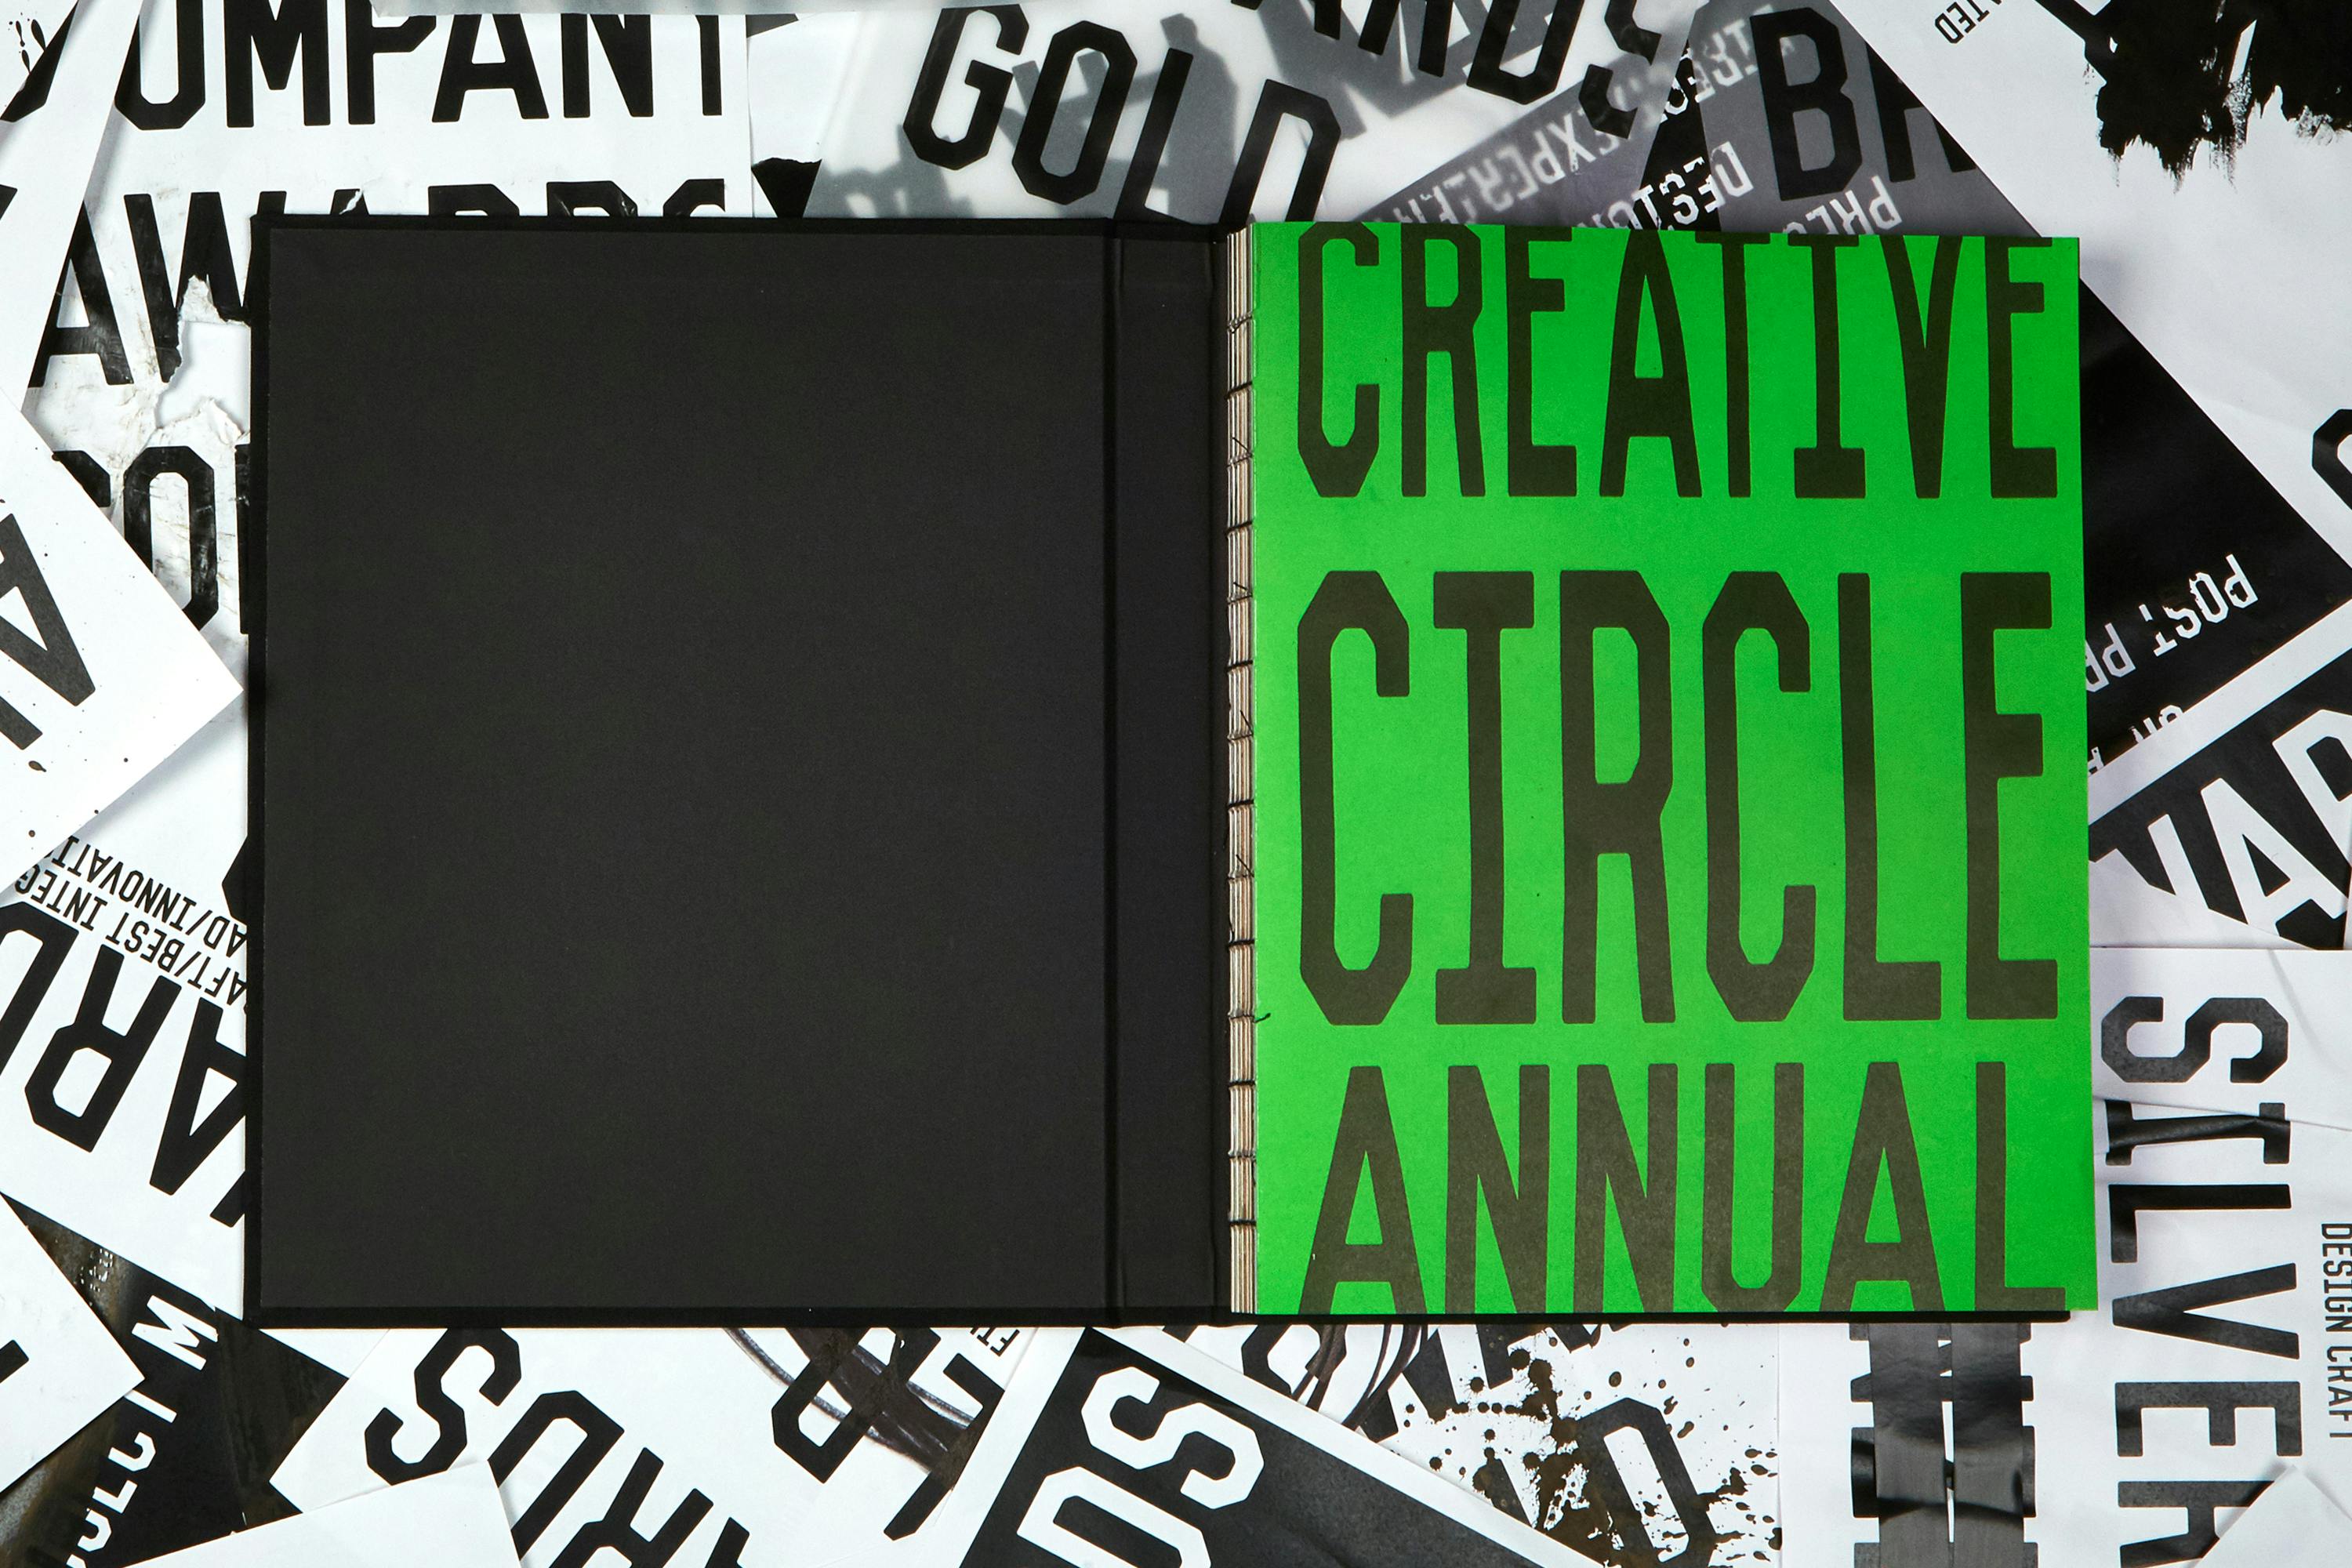 Creative Circle's 2017 Annual